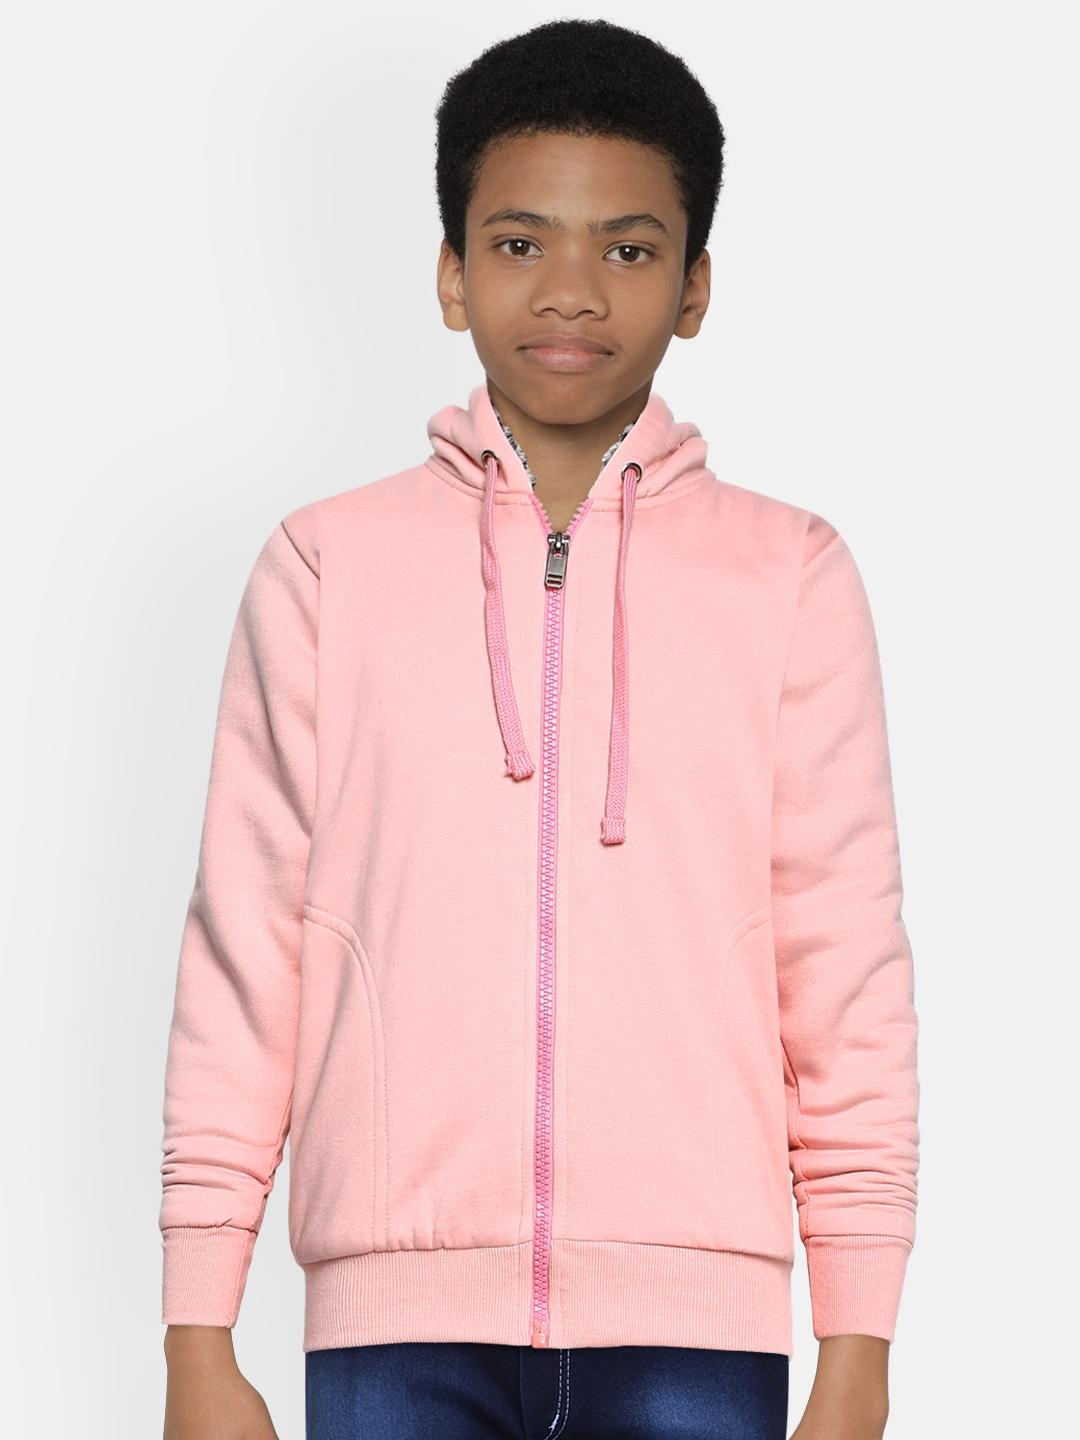 adbucks-boys-pink-solid-hooded-sweatshirt